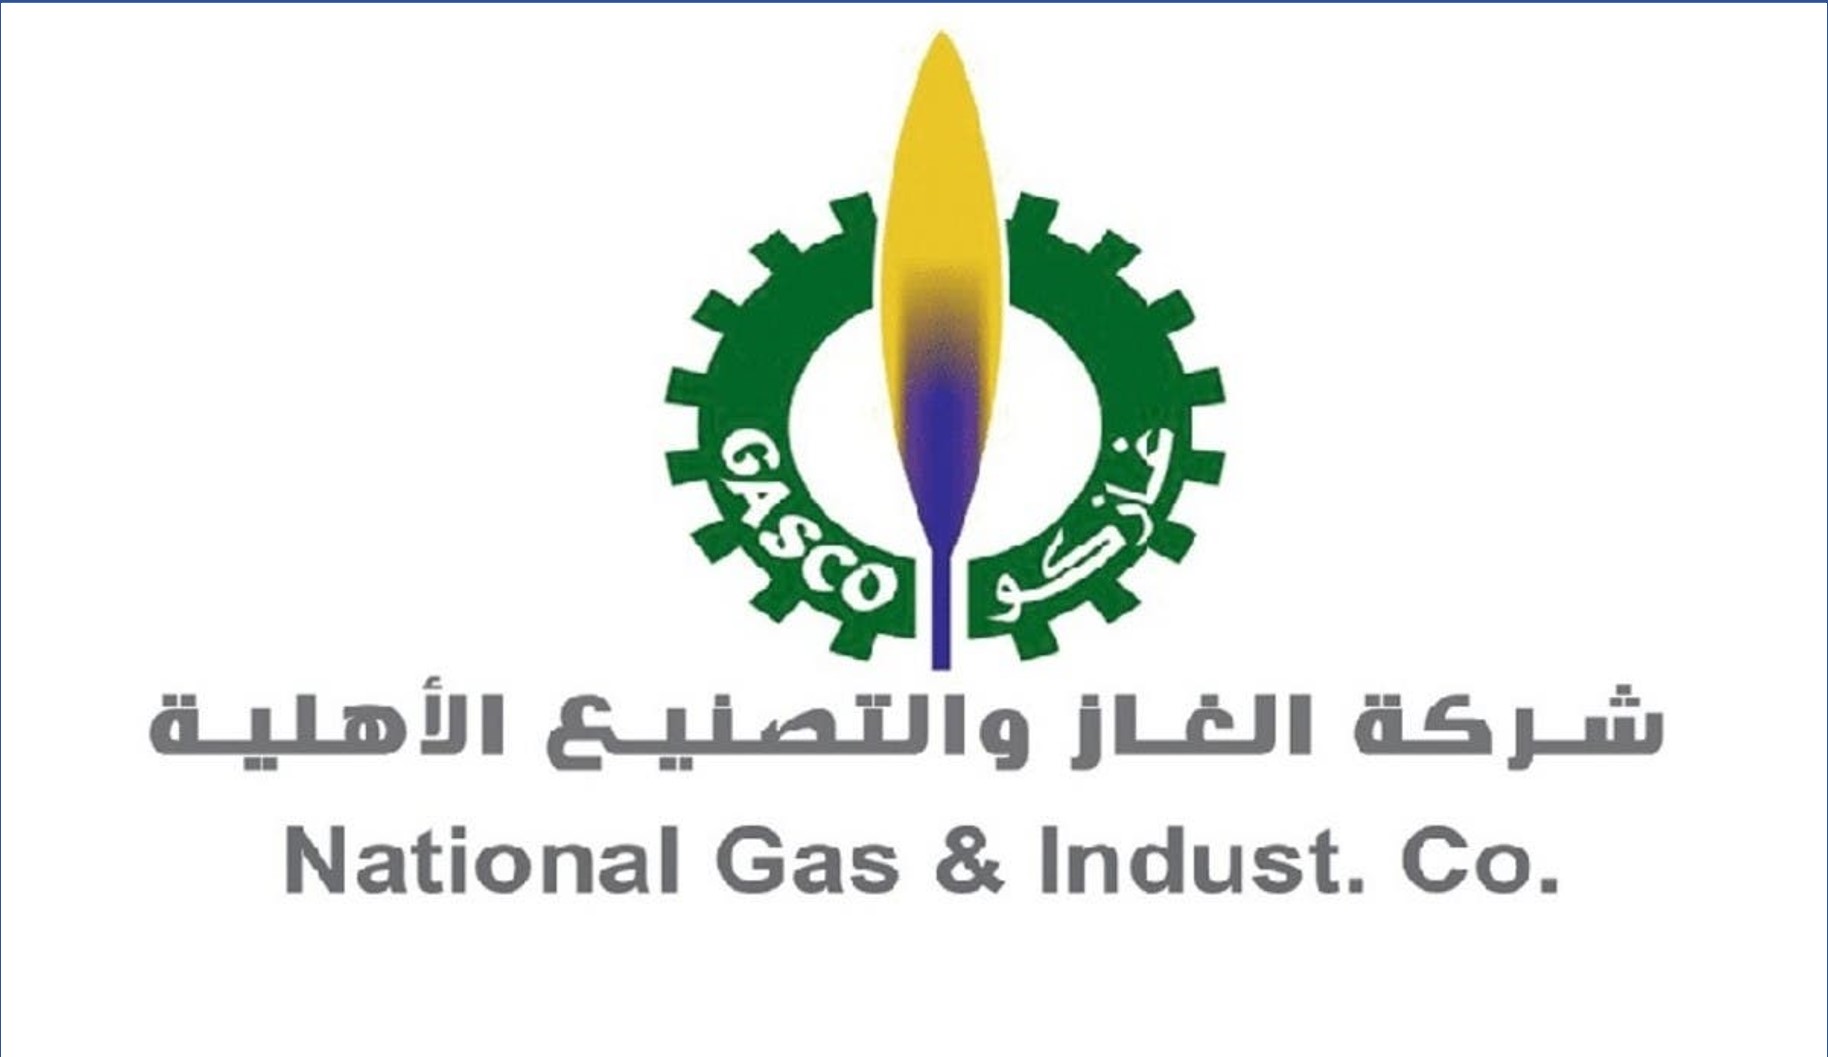 وظائف إدارية وهندسية في شركة الغاز والتصنيع بالسعوية